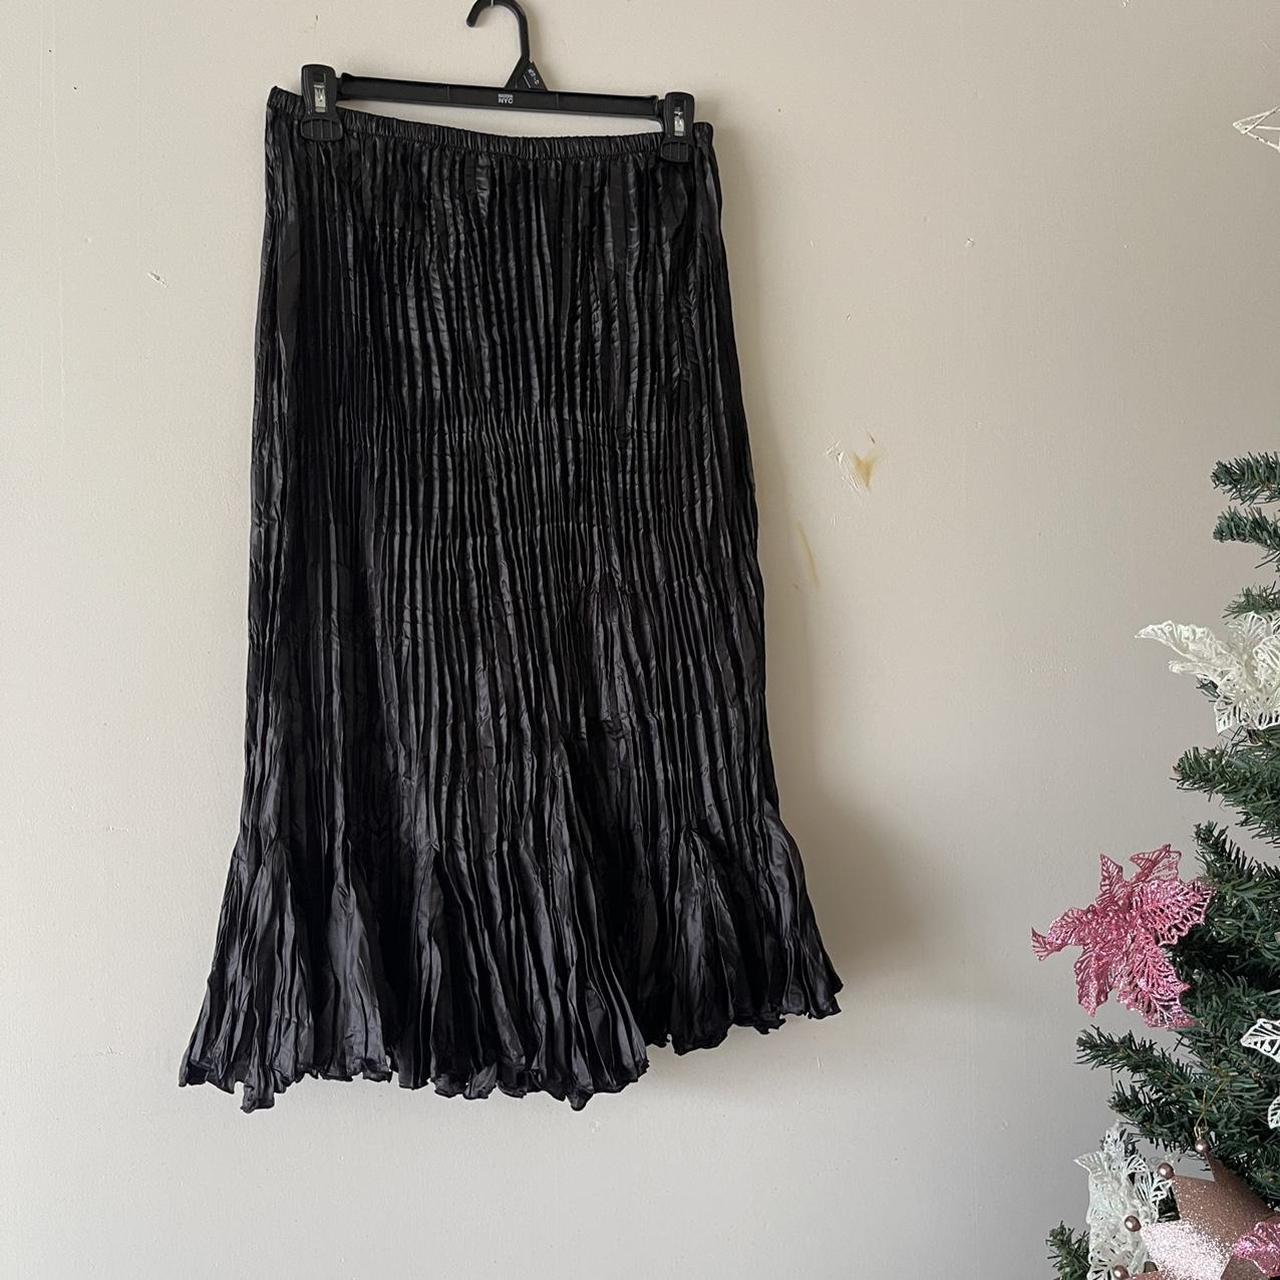 Product Image 1 - Zashi ruffle bottom skirt

Size L